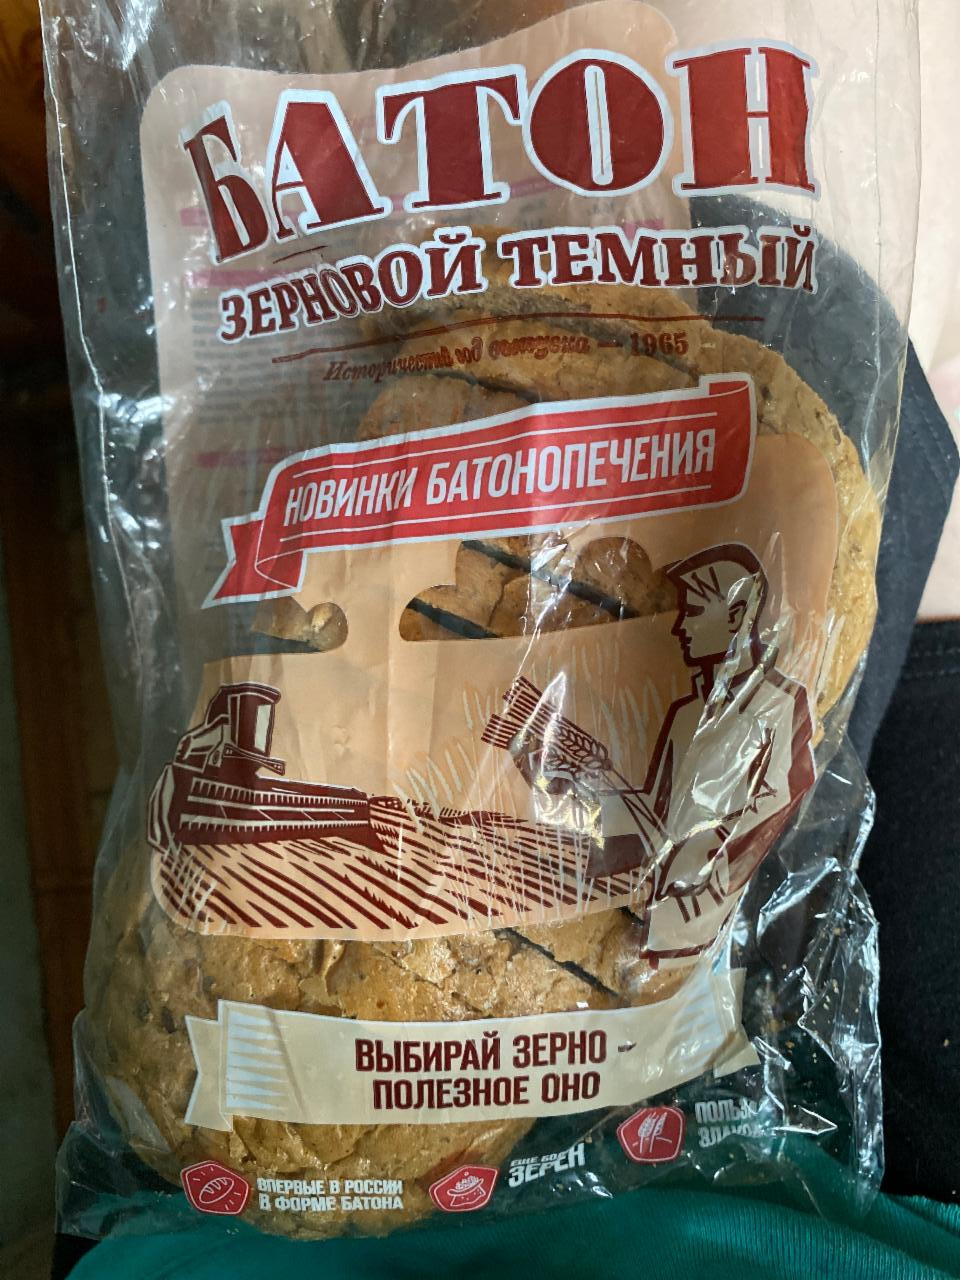 Фото - Батон зерновой темный Русский хлеб